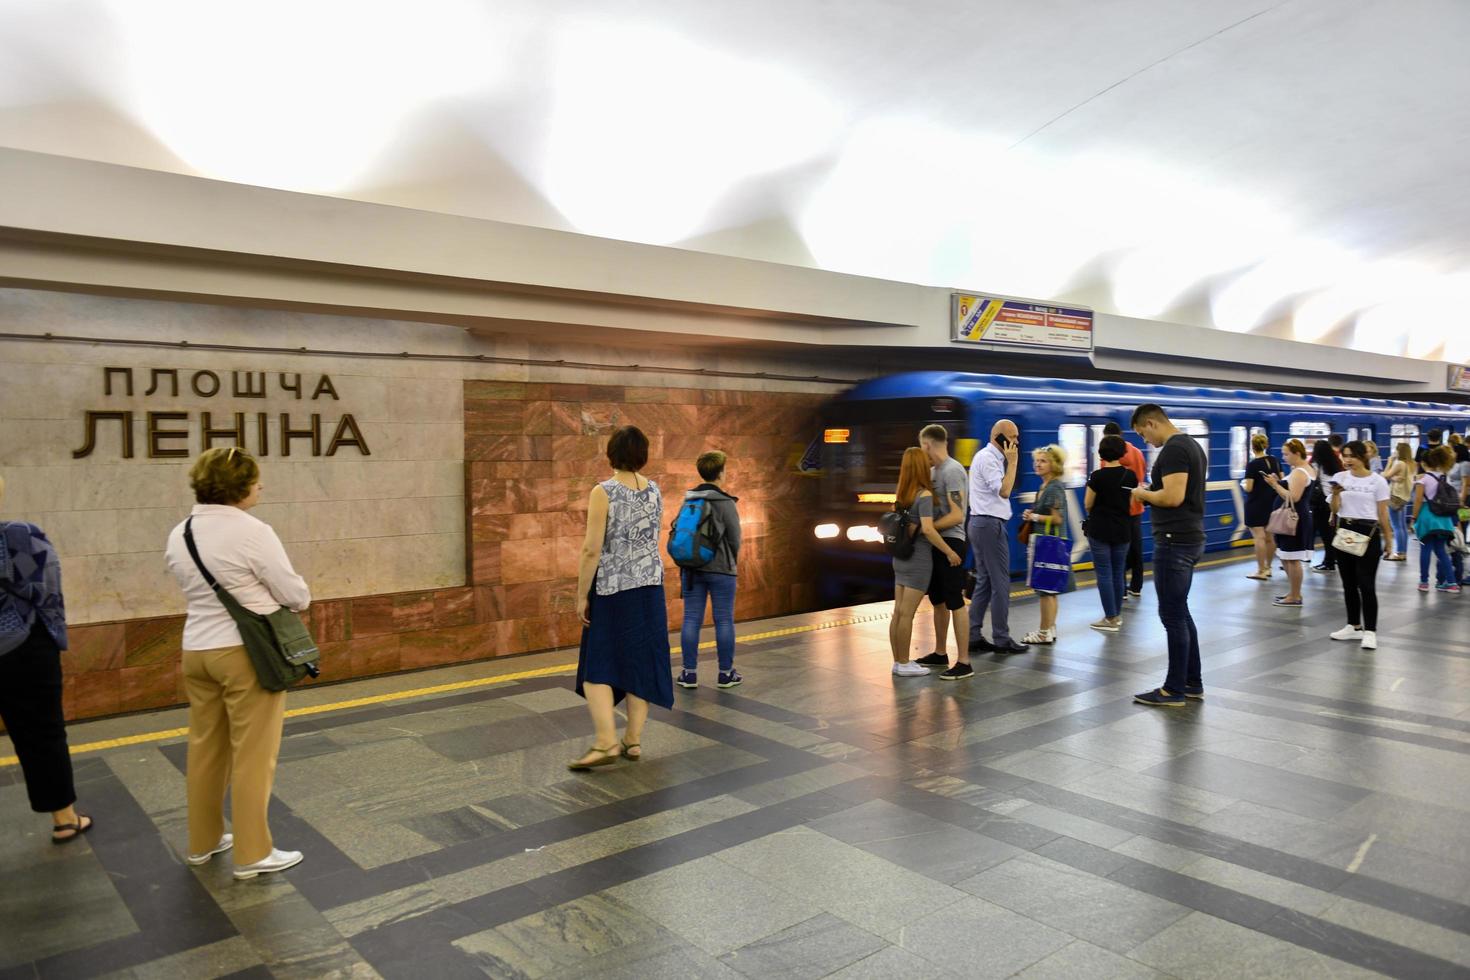 minsk, bielorrusia, 20 de julio de 2019, estación de metro de la plaza lenin en minsk, bielorrusia con decoraciones sovieteras, plaza lenin escrita en bielorruso foto